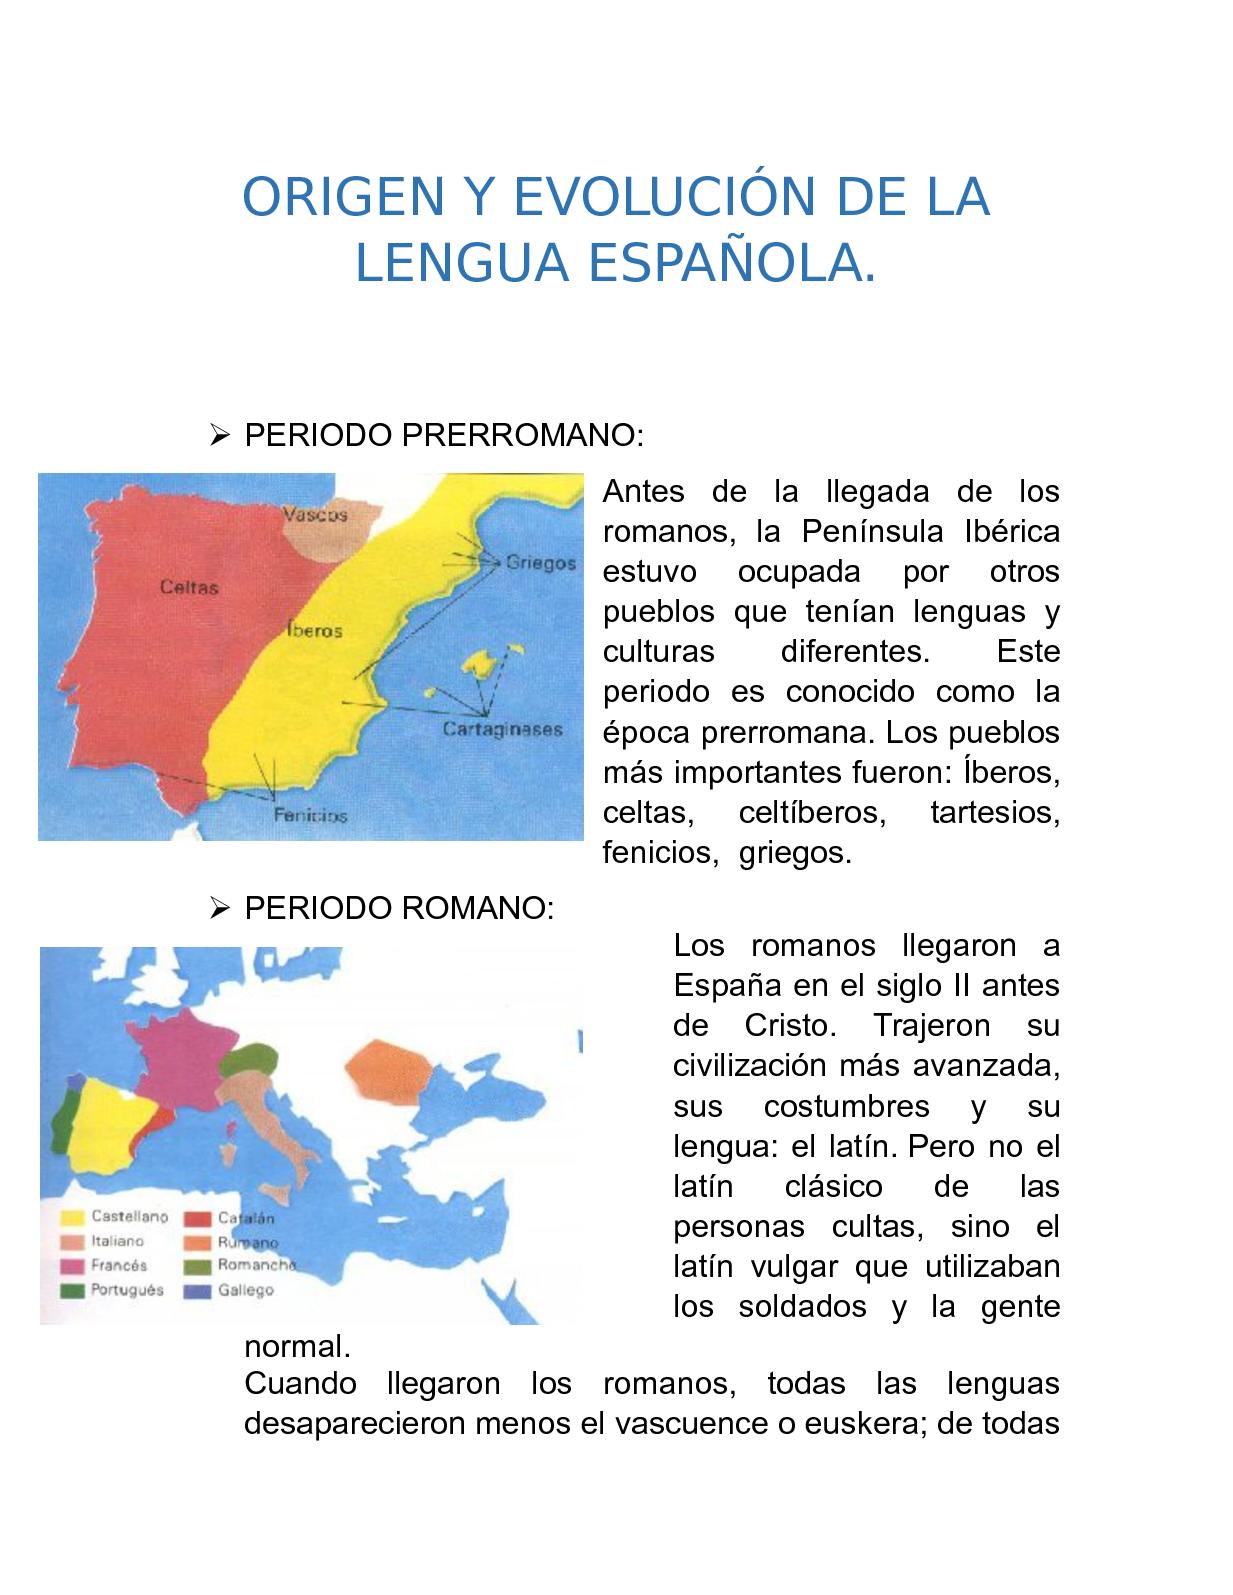 evolucion de la lengua espanola